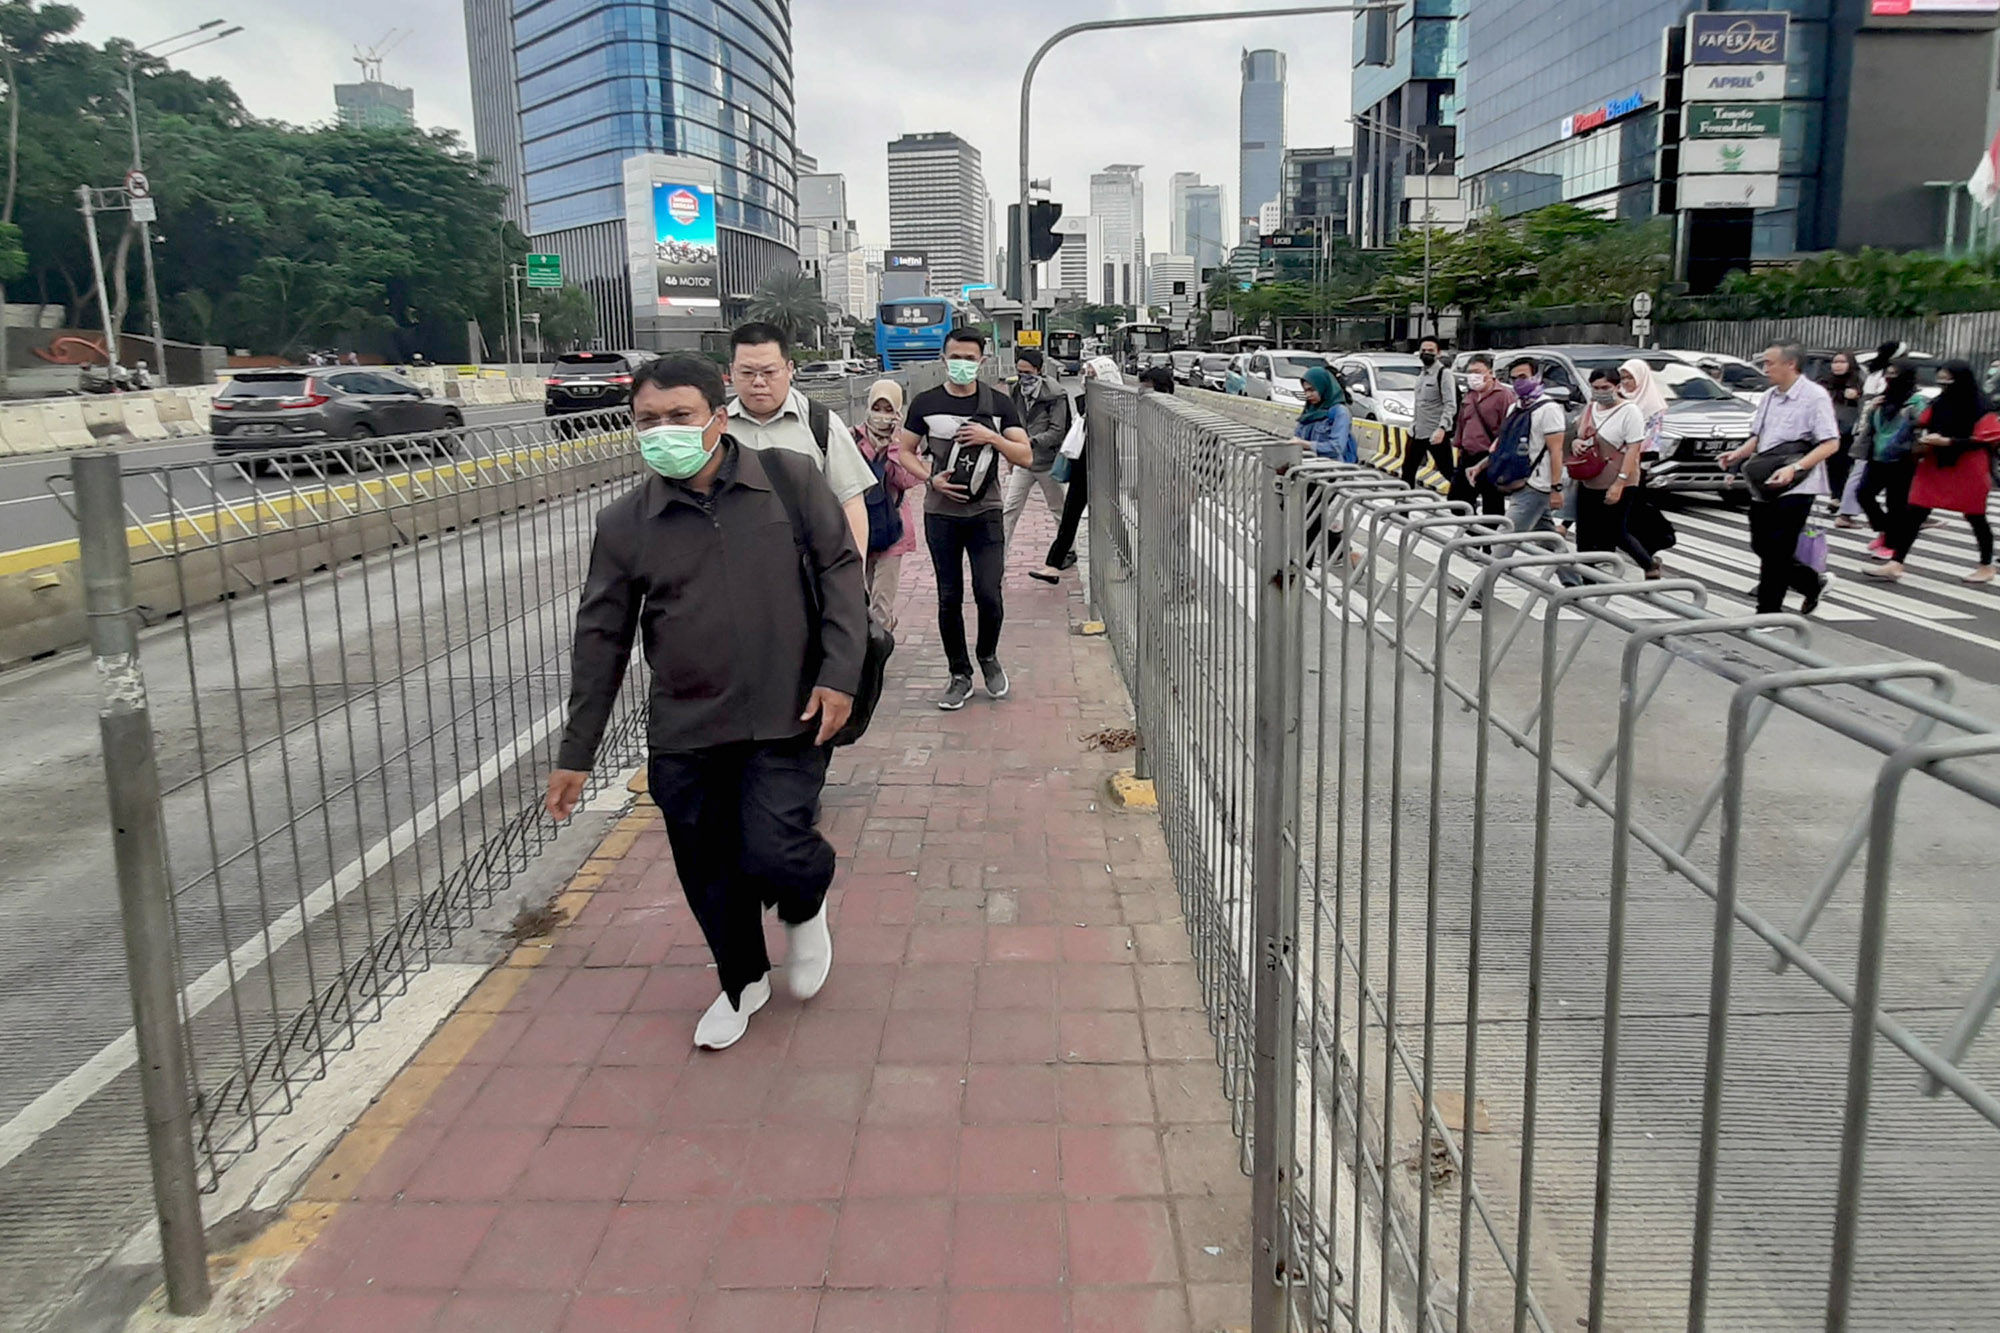 <p>Ilustrasi: Warga beraktivitas menggunakan masker di kawasan Thamrin, Jakarta Pusat. Semua warga negara Indonesia diwajibkan menggunakan masker saat keluar rumah untuk mencegah penularan virus corona. Juru bicara pemerintah untuk penanganan Covid-19, Achmad Yurianto menegaskan bahwa pemerintah menjalankan program &#8216;masker untuk semua&#8217; per 5 April 2020 sesuai anjuran Organisasi Kesehatan Dunia (WHO). Foto: Ismail Pohan/TrenAsia</p>
